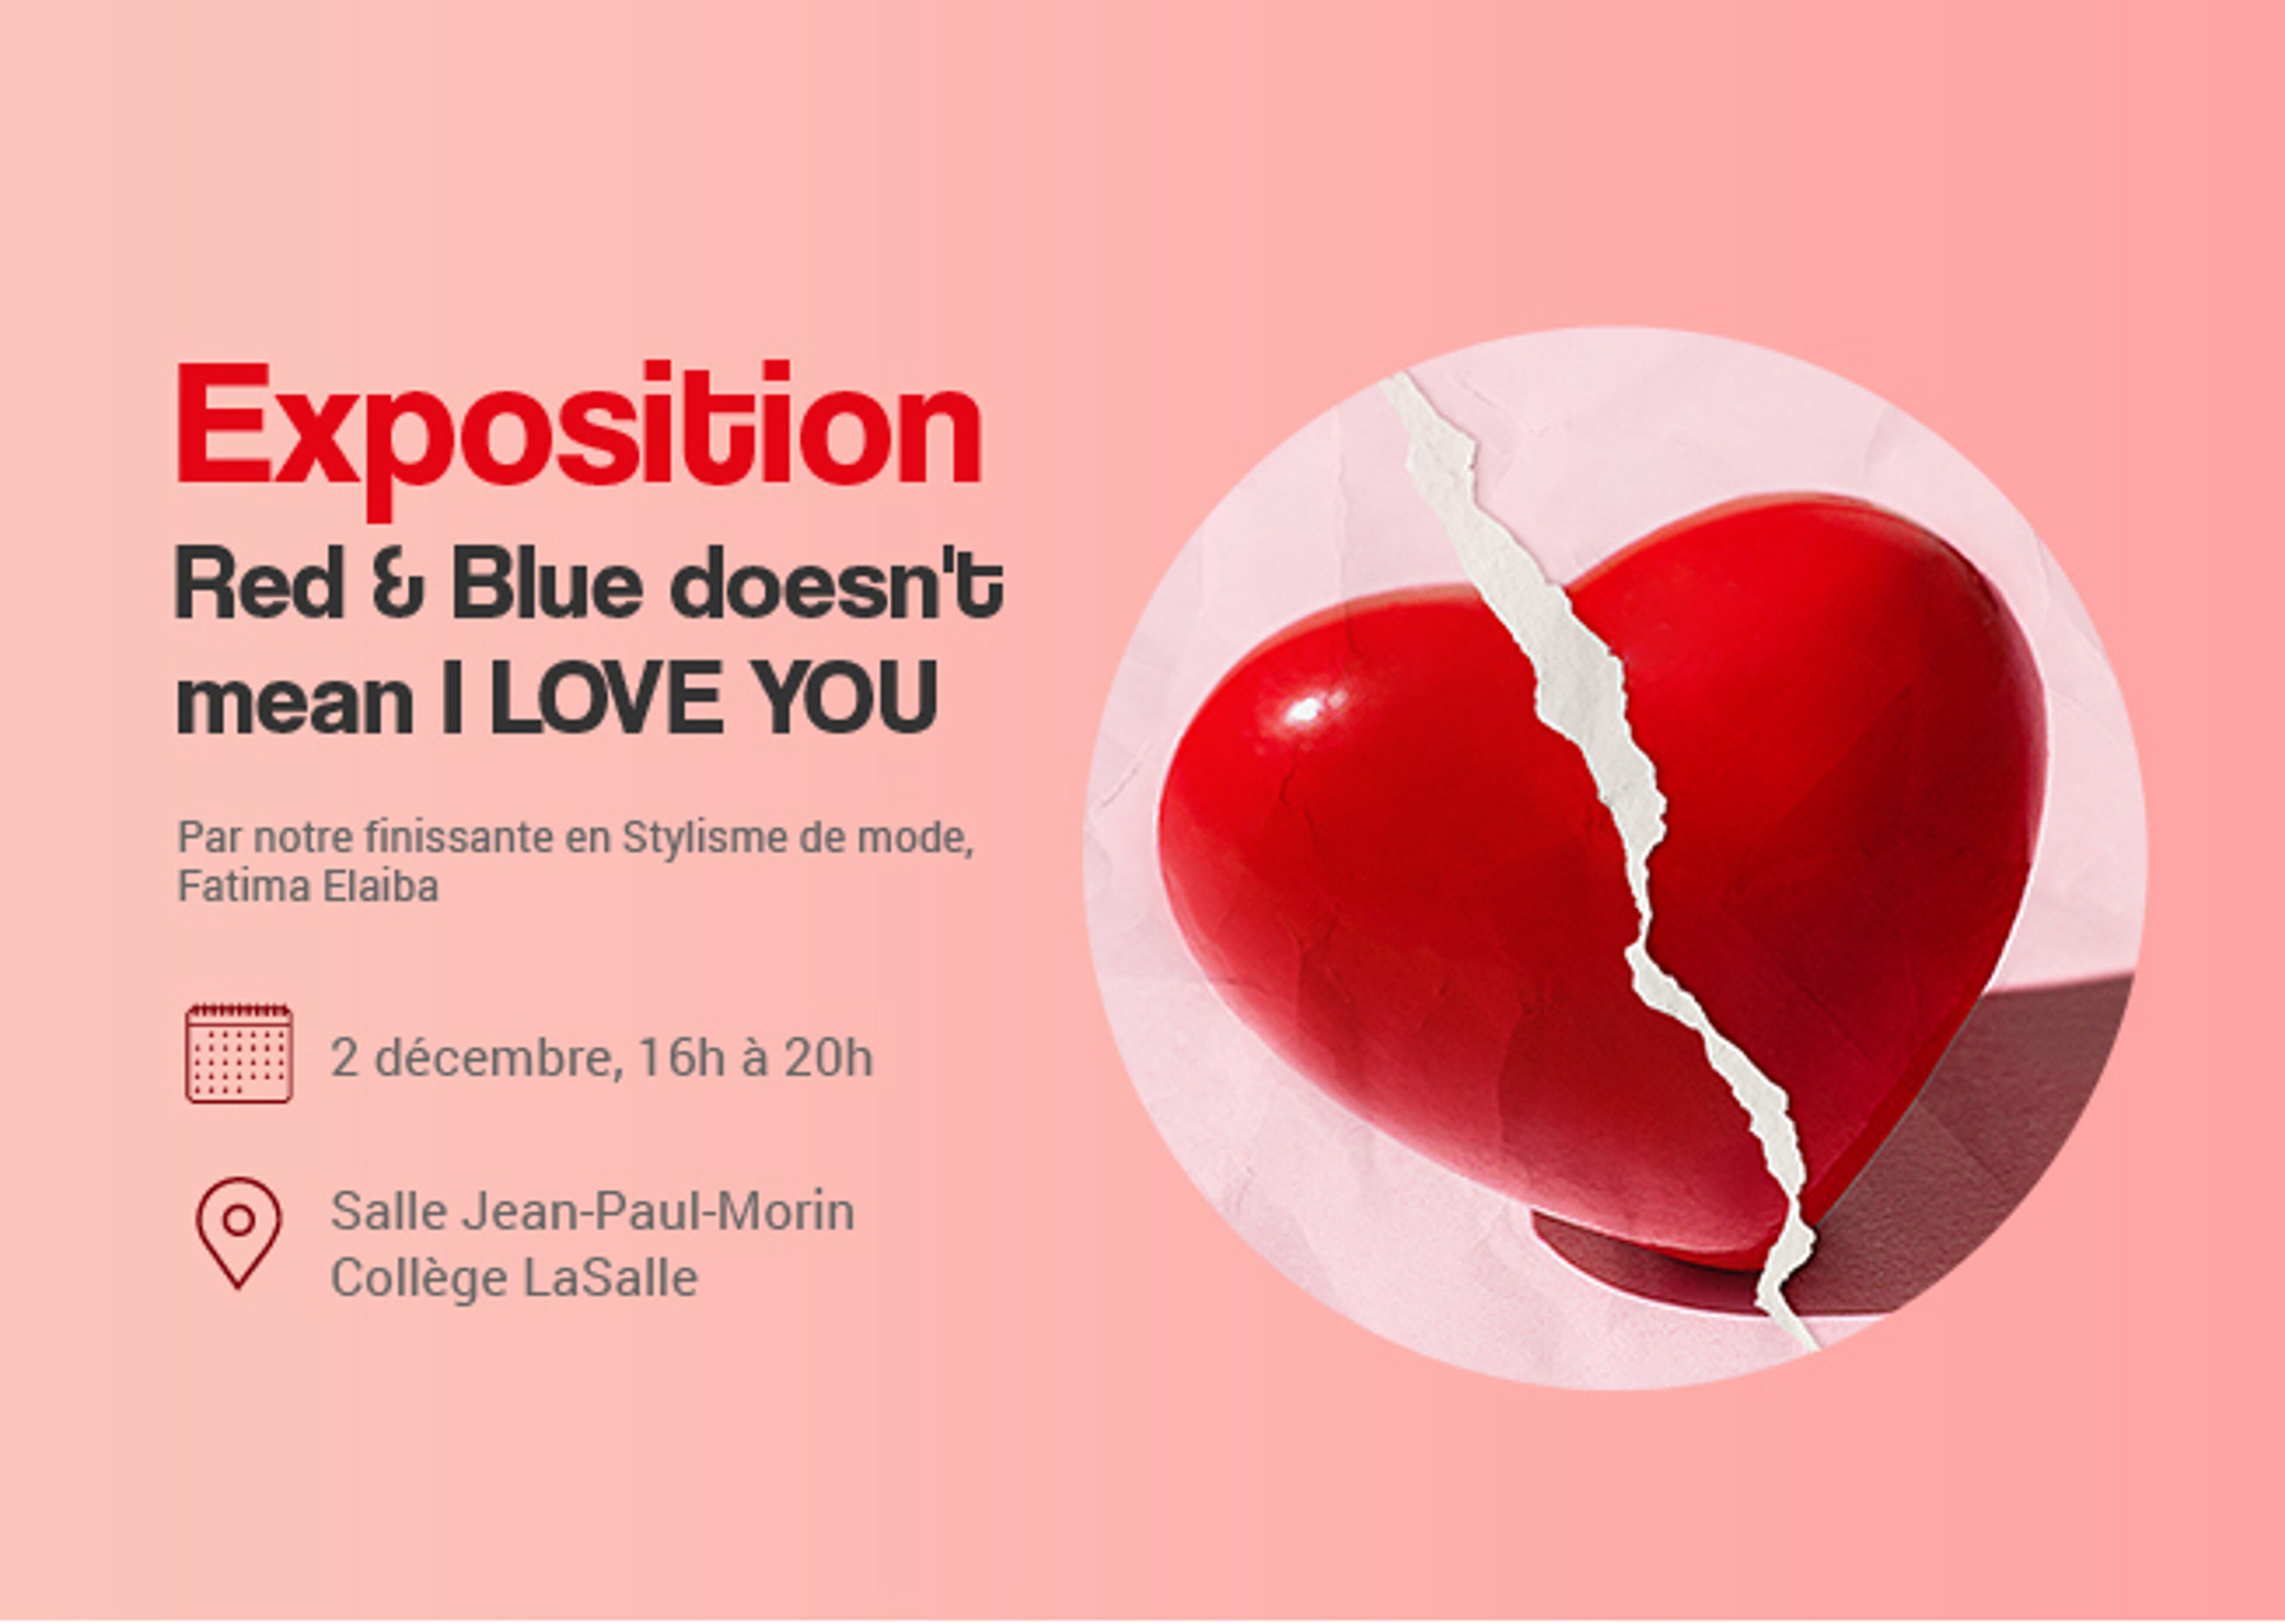 Affiche pour l'exposition "Red & Blue doesn't mean I LOVE YOU" par Fatima Elaiba, diplômée en stylisme de mode, le 2 décembre.